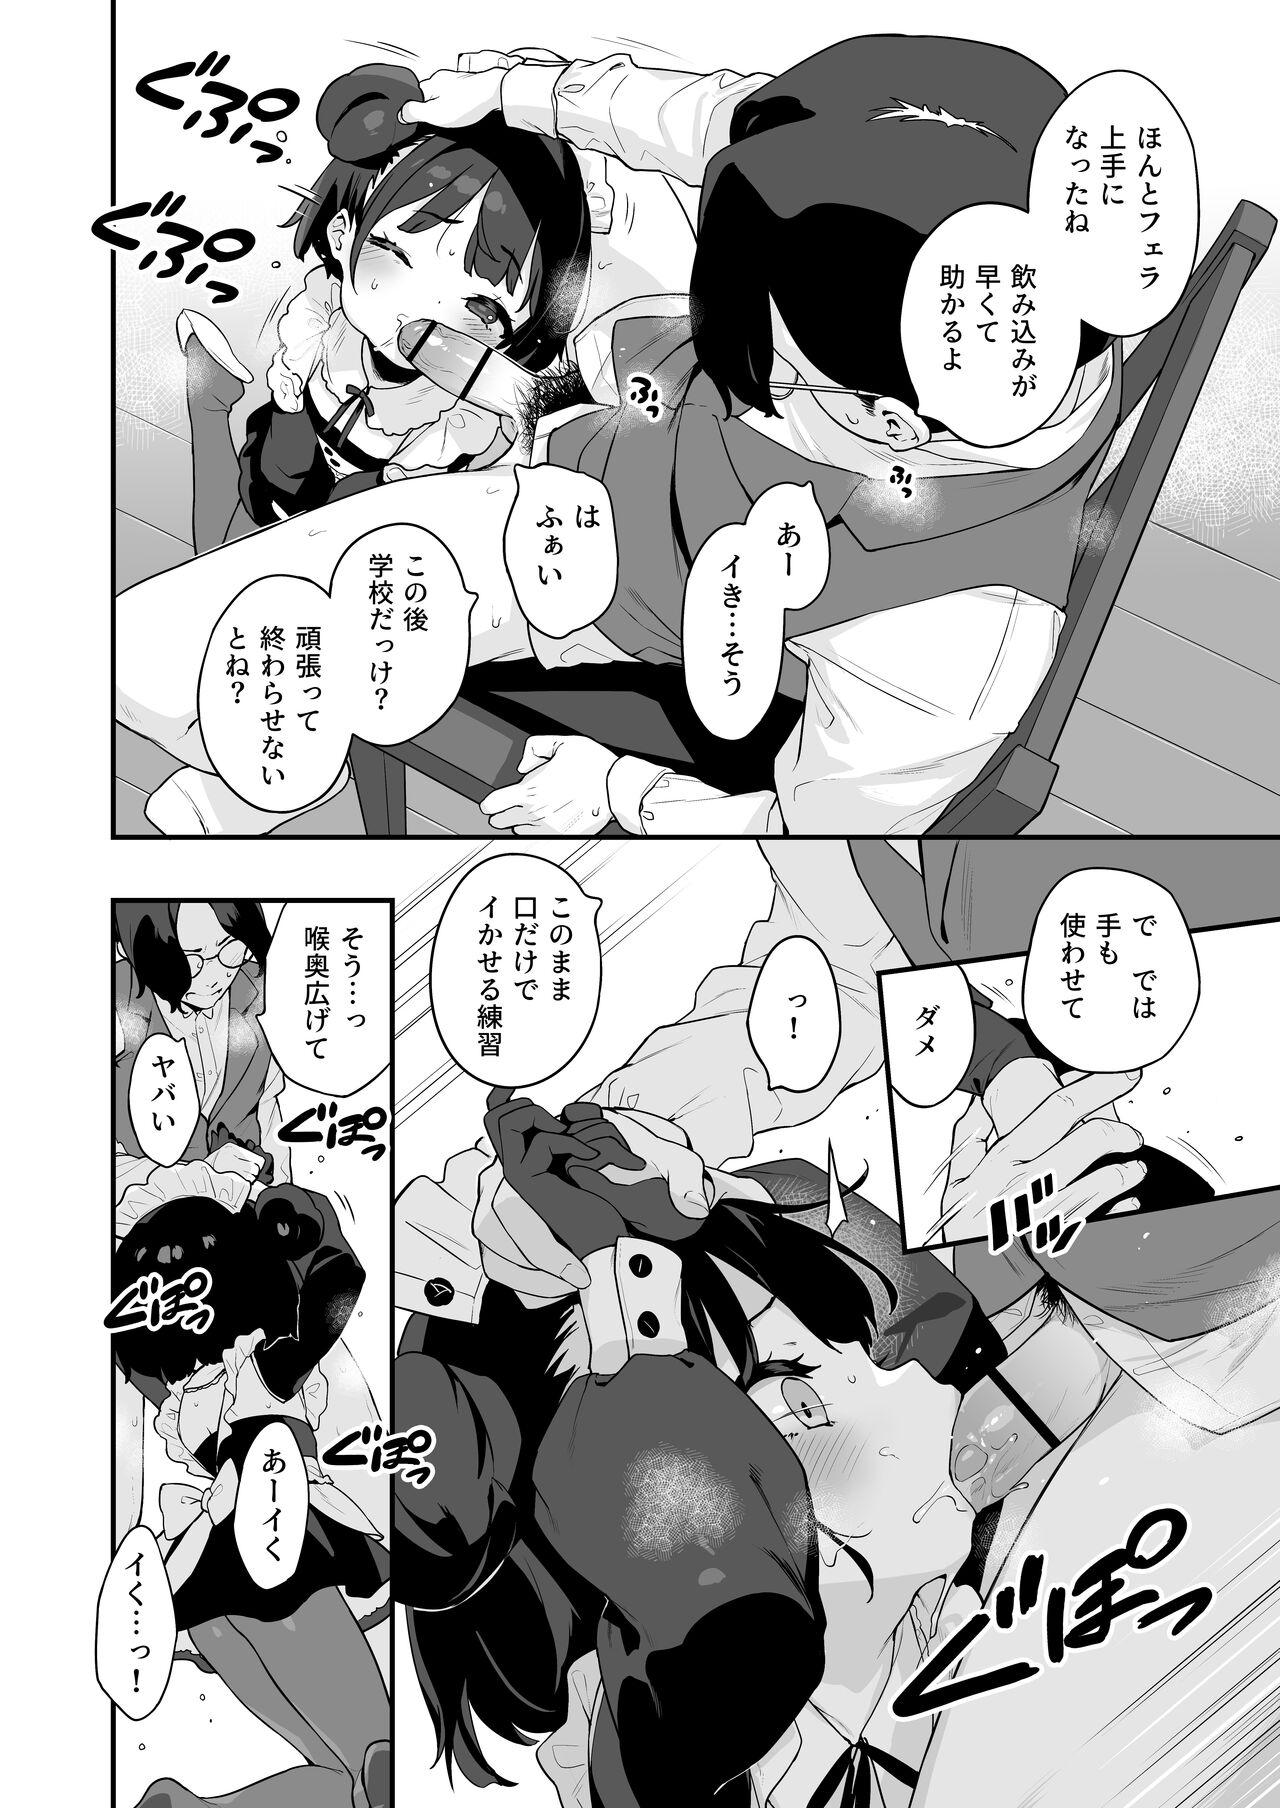 Dicks Komomo wa Goshujinsama Senyo no Ryoana Nikubenki Loli Maid - Original Uncensored - Page 6